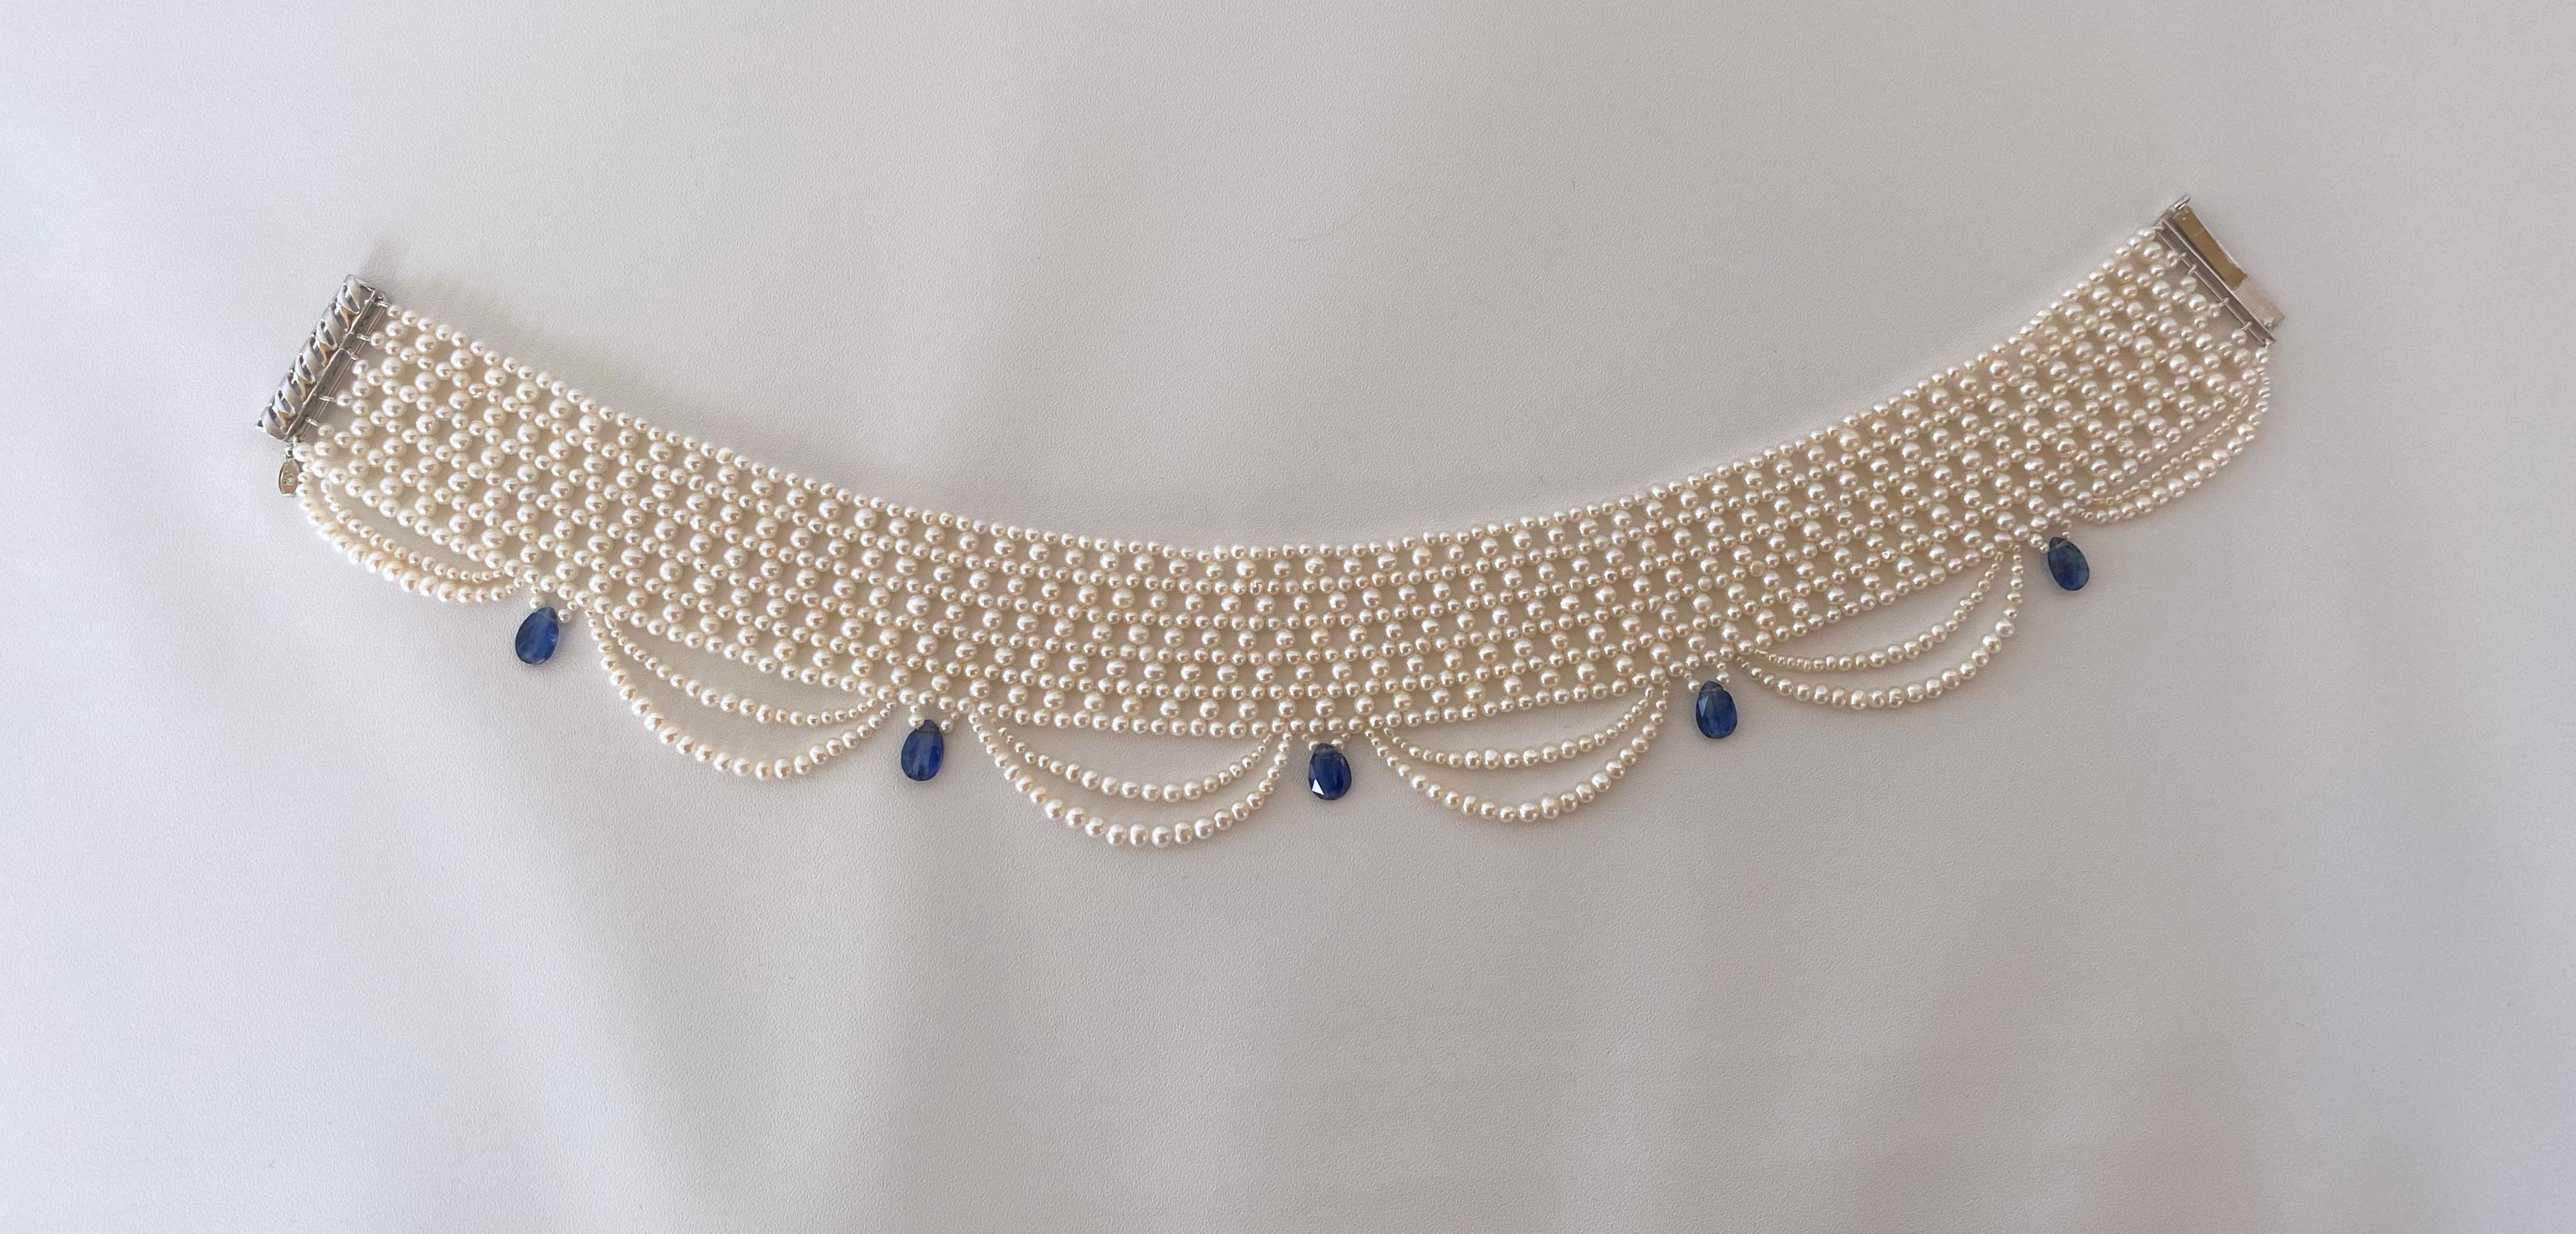 Handgewebte Halskette von Marina J. Diese romantische und zarte Halskette ist perfekt für eine Braut oder einen anderen besonderen Anlass. Wunderschönes, viktorianisch inspiriertes Schmuckstück mit weißen, glänzenden Zuchtperlen, die kunstvoll zu